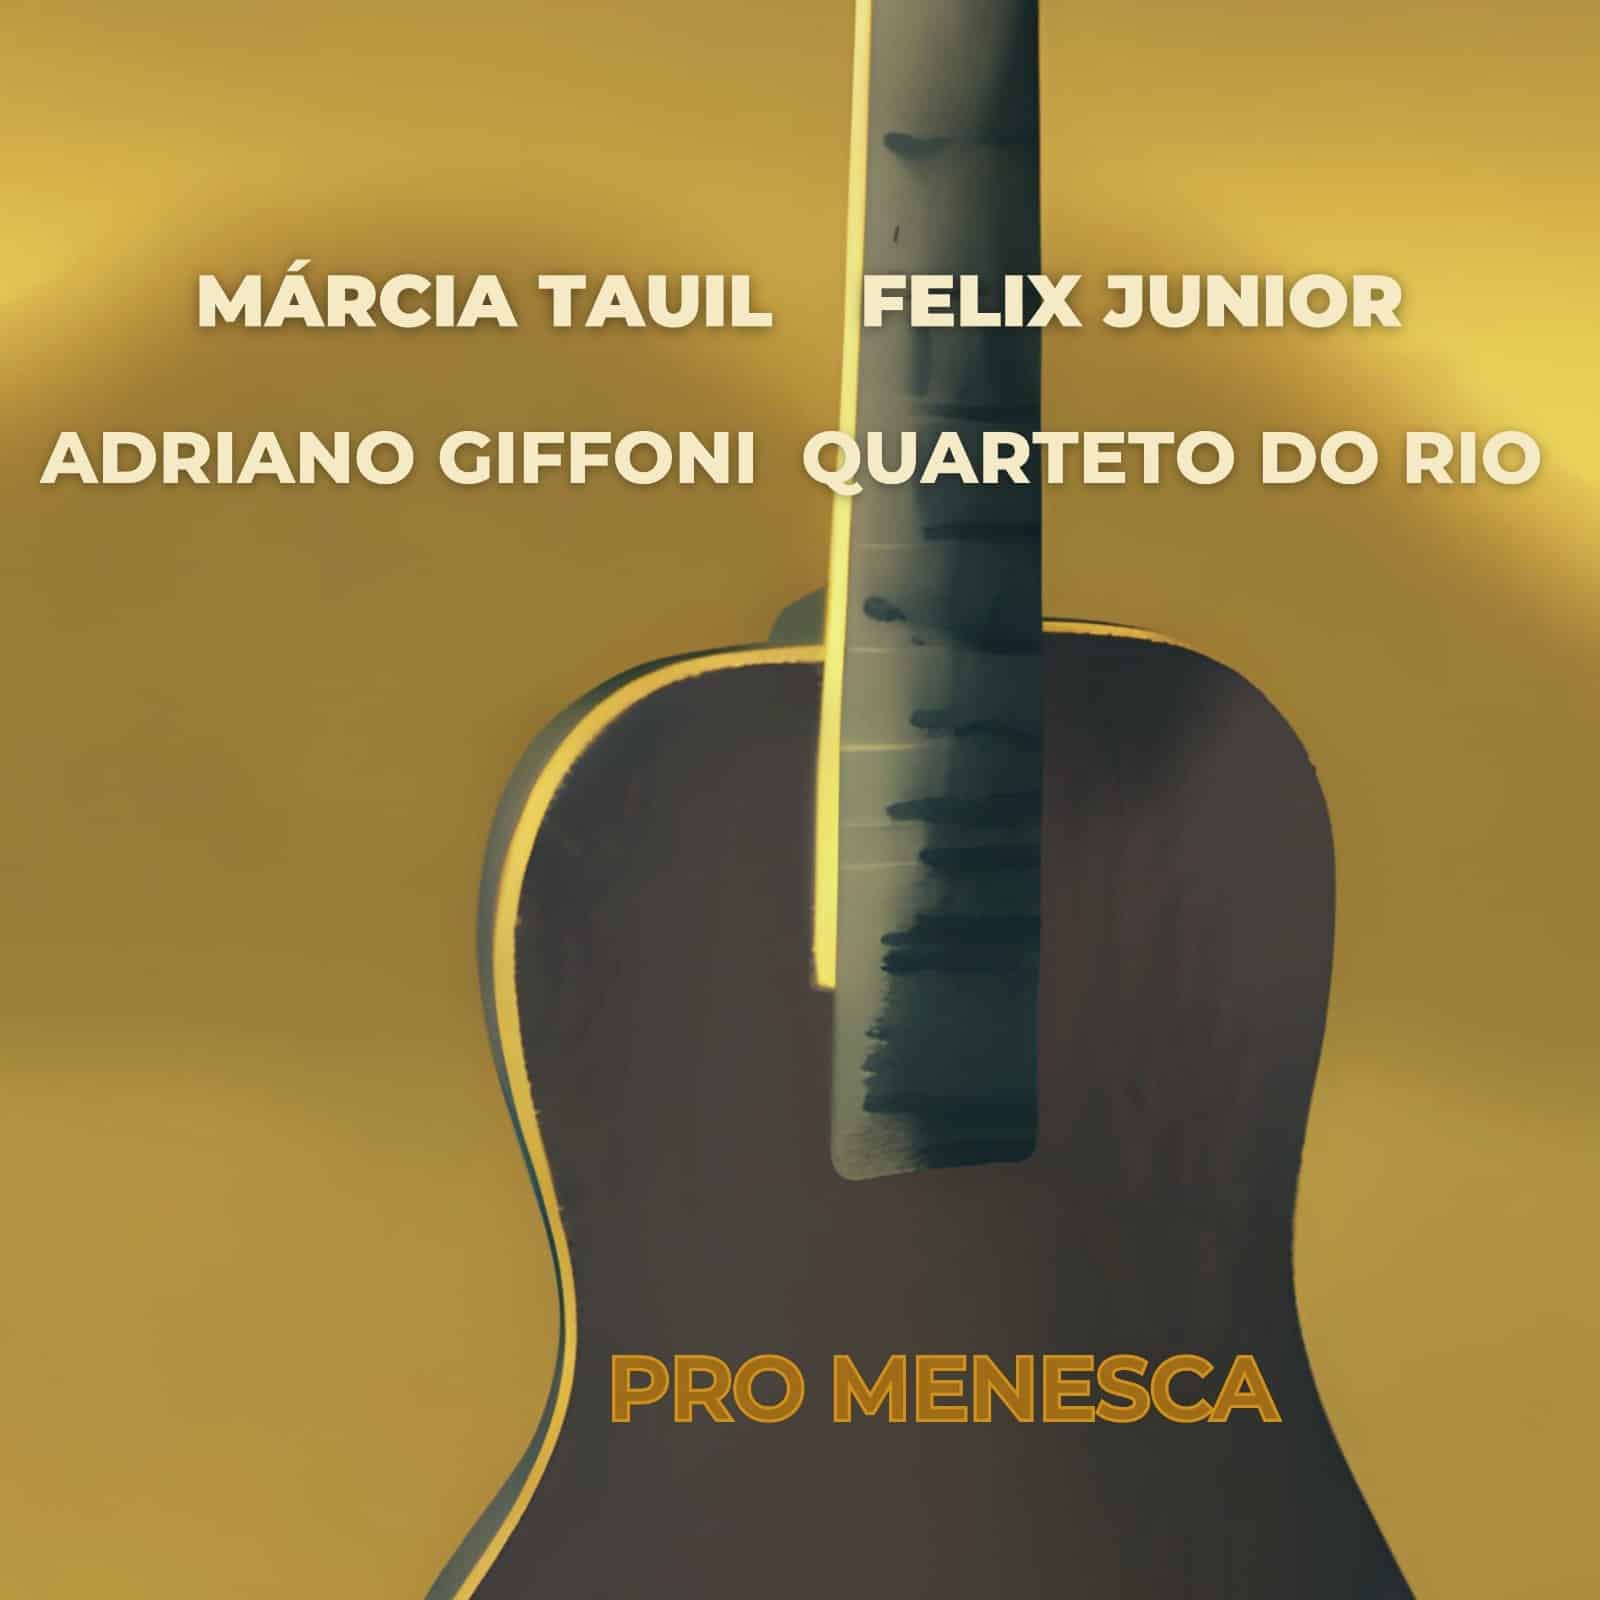 revistaprosaversoearte.com - Single 'Pro Menesca' com Márcia Tauil, Quarteto do Rio, Adriano Giffoni e Felix Junior